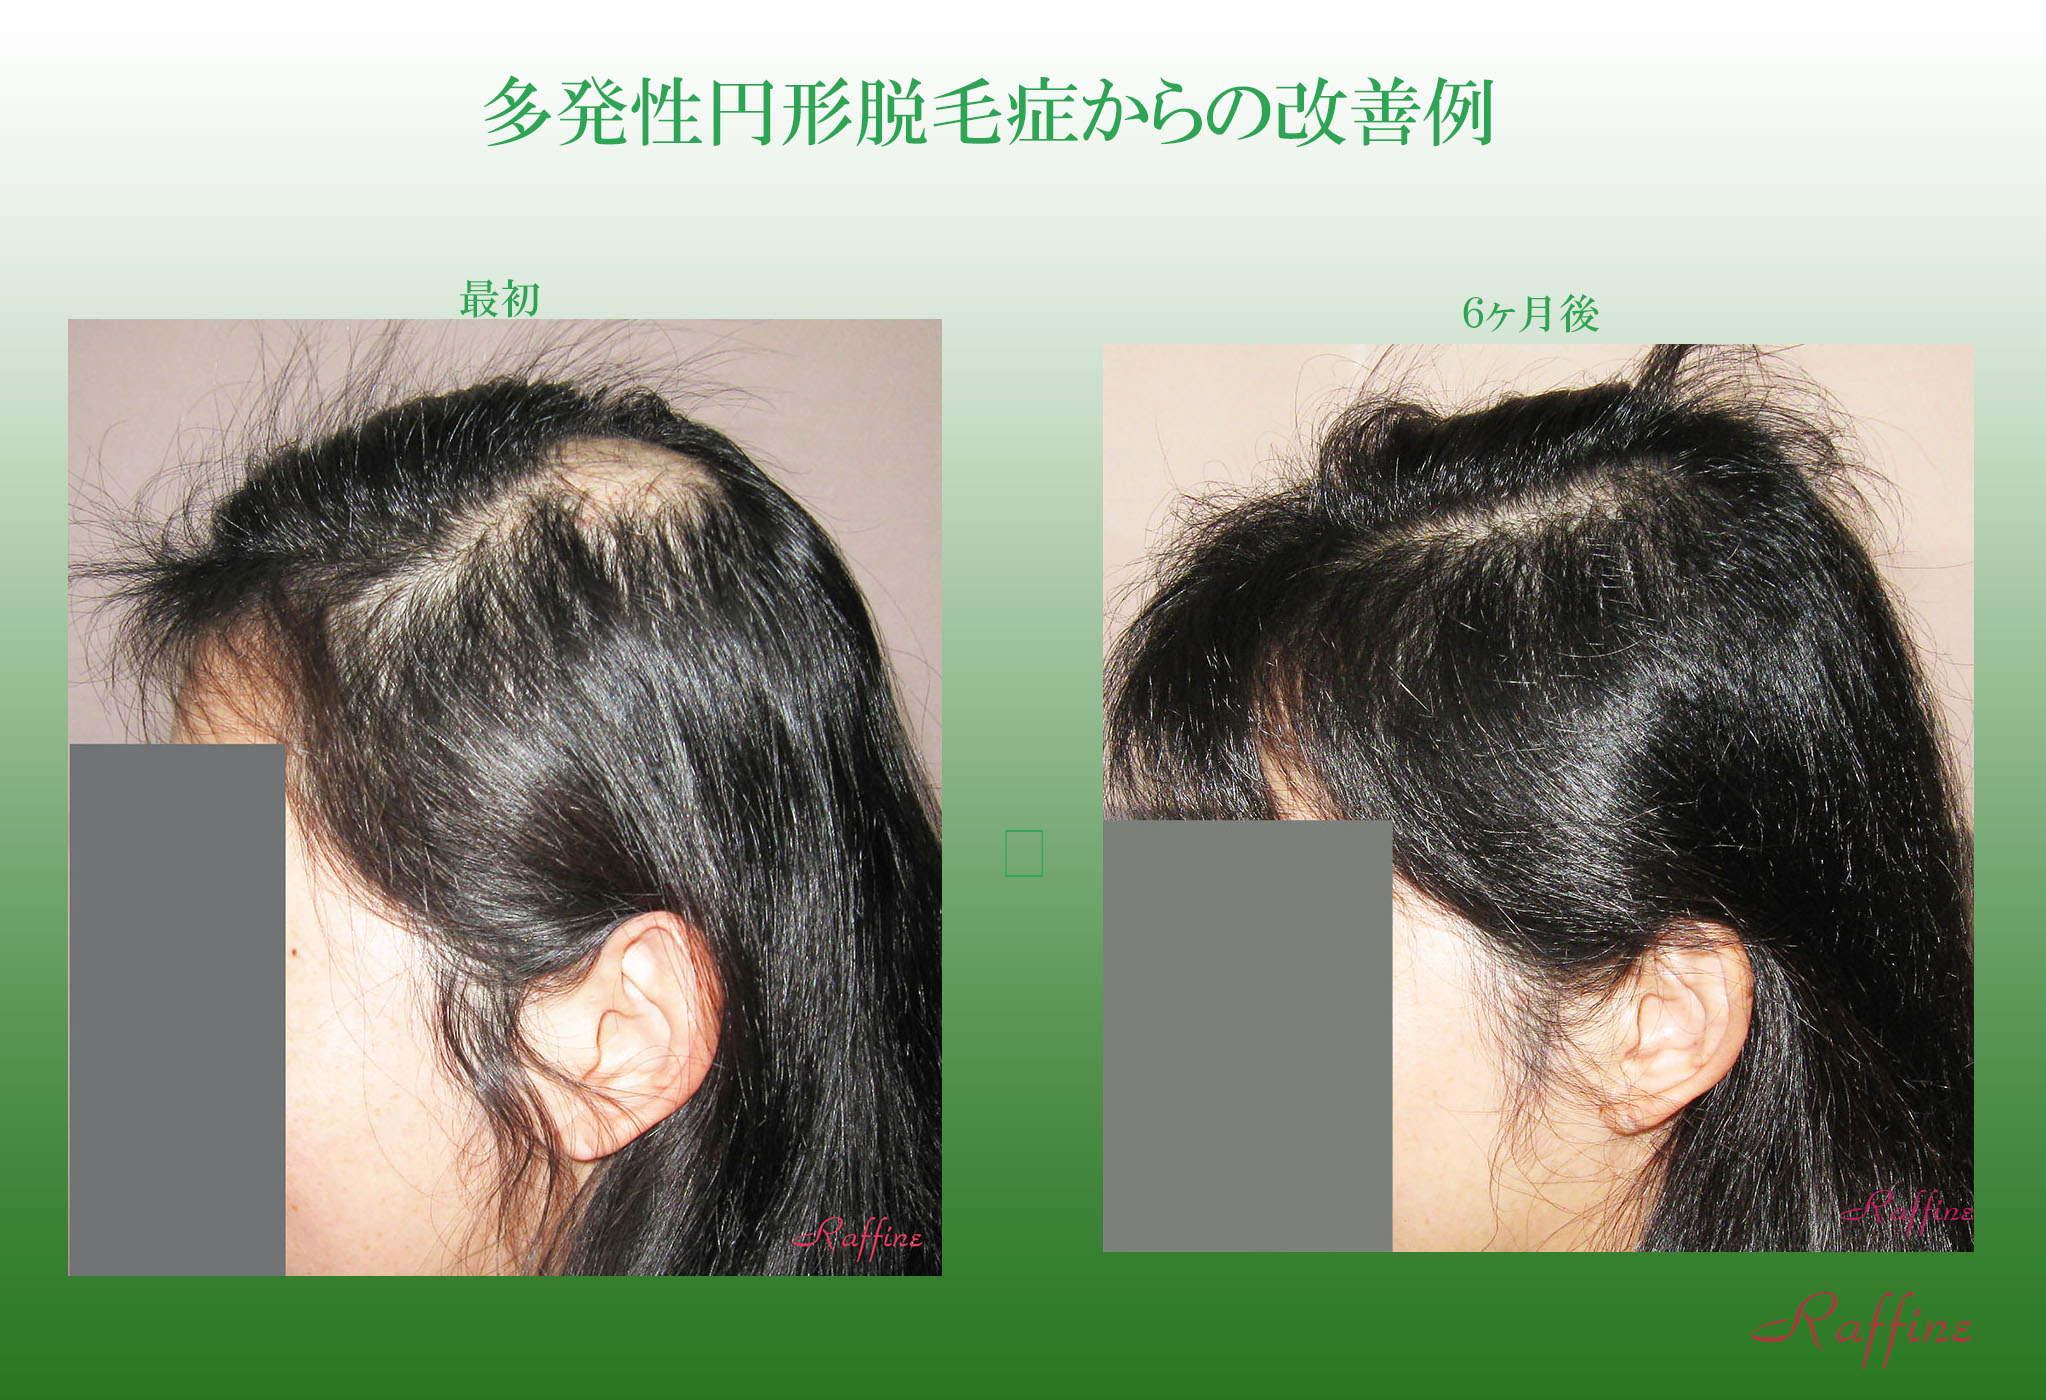 円形脱毛症・多発性円形脱毛症の改善例 特集2 白髪の改善や予防防止と育毛・発毛を実現するラ・フィーネ研究開発